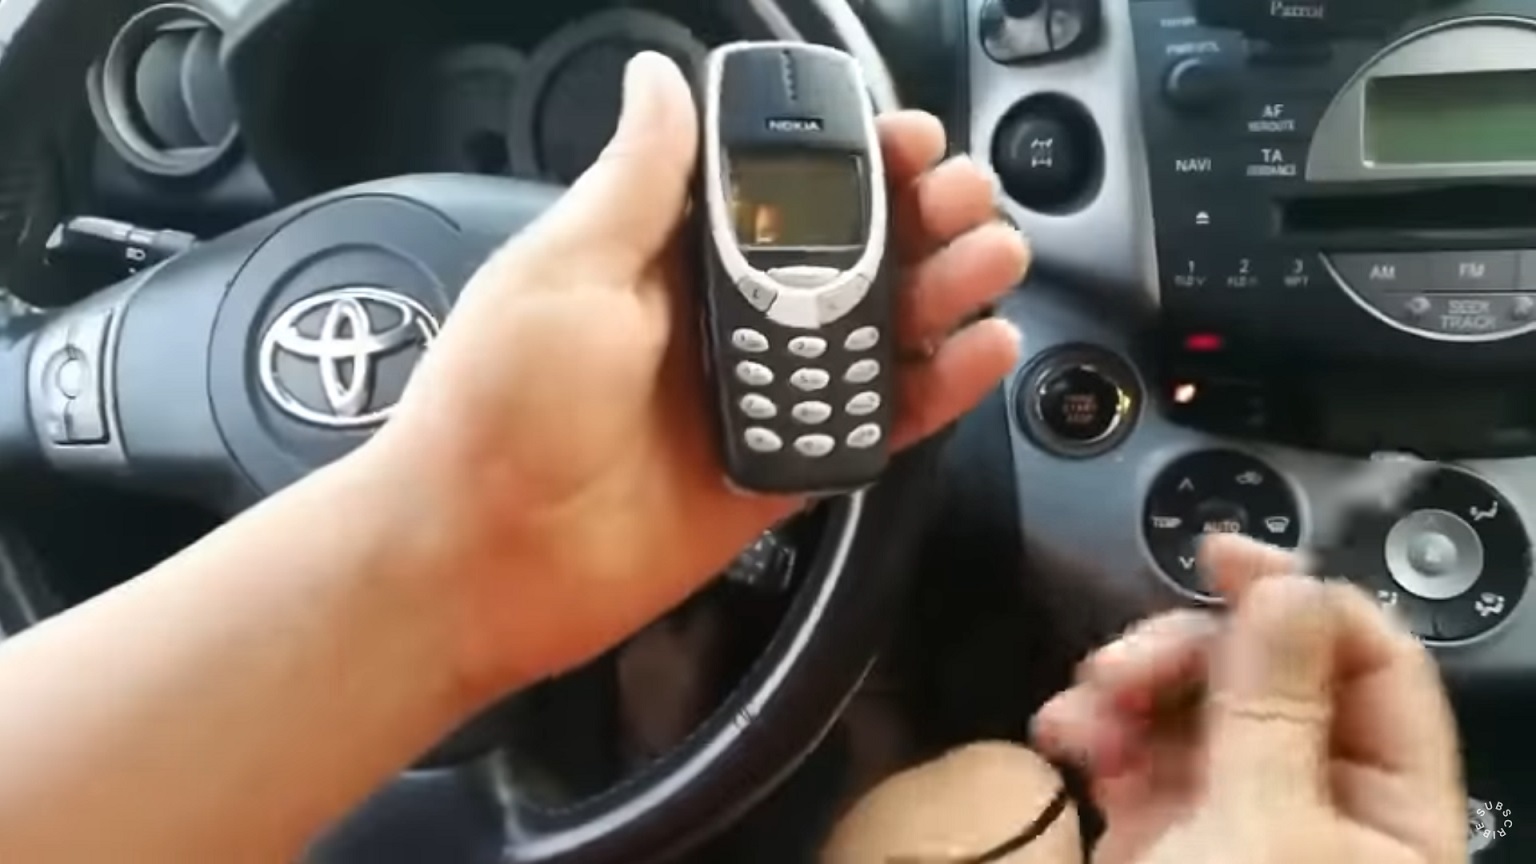 Criminosos usam celular antigo da Nokia e caixa da JBL para roubar carros